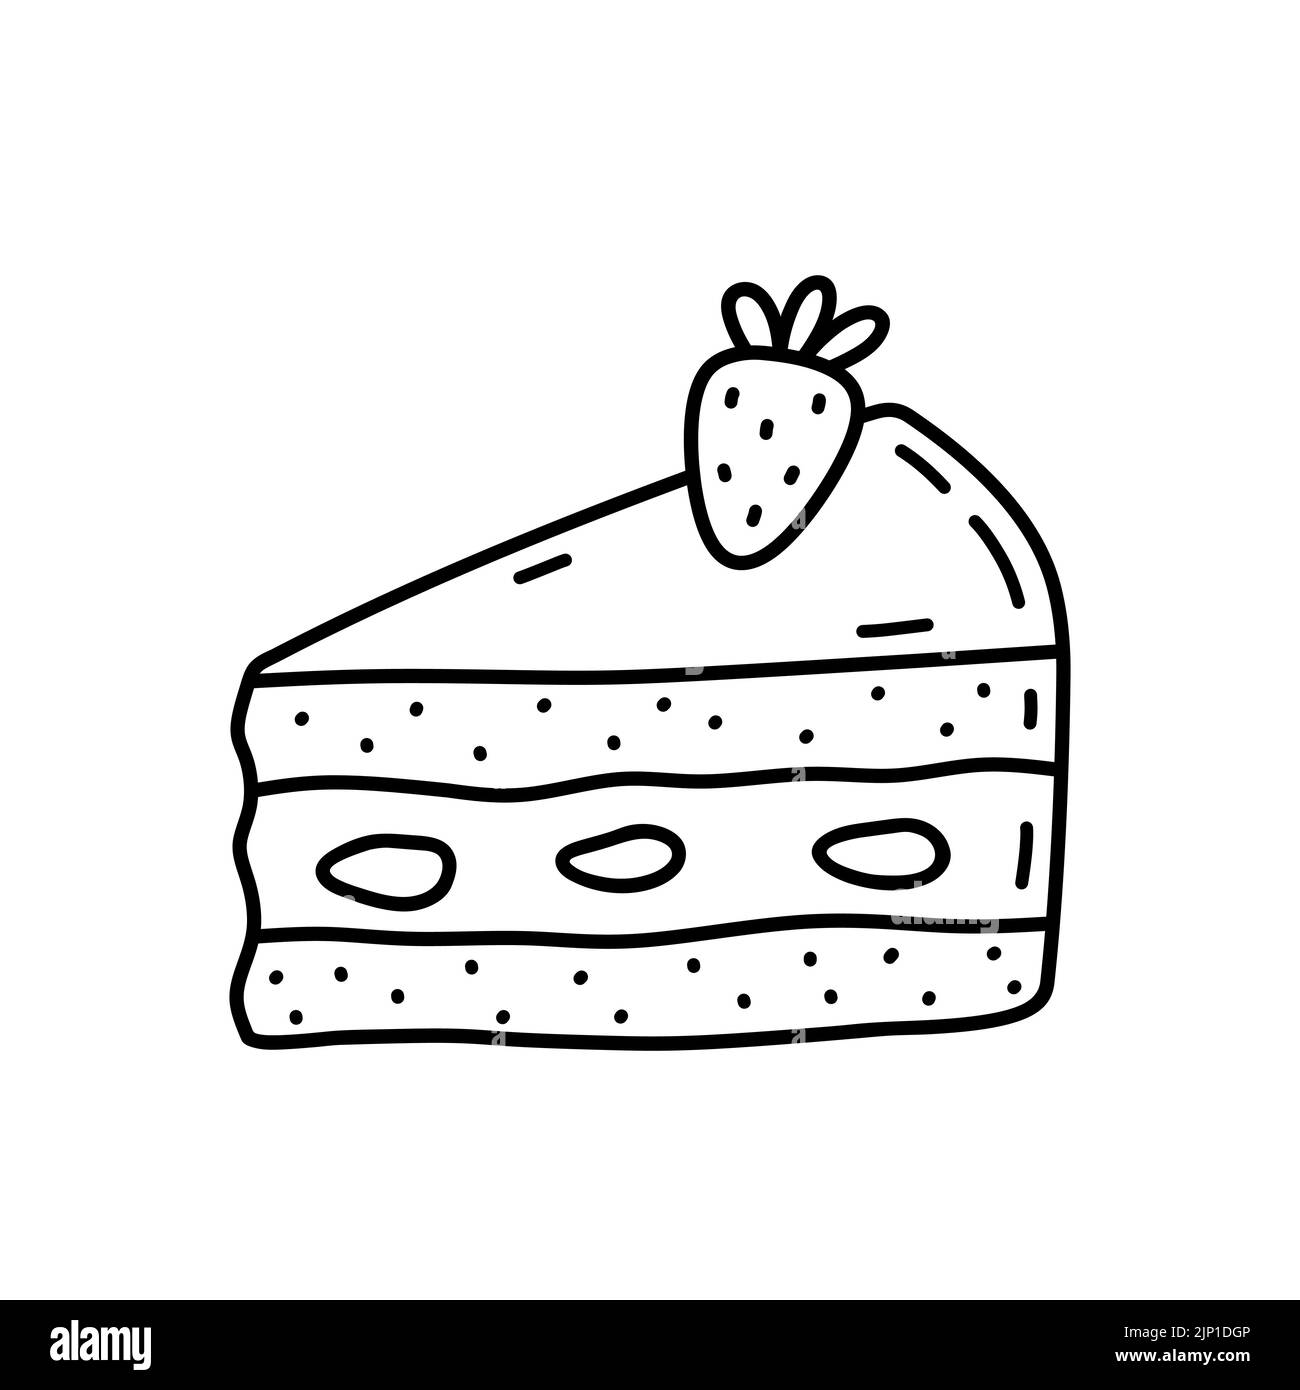 Pezzo di torta con fragola isolata su fondo bianco. Dessert carino, cibo dolce. Disegno vettoriale a mano in stile doodle. Perfetto per vari disegni, schede, decorazioni, logo, menu. Illustrazione Vettoriale